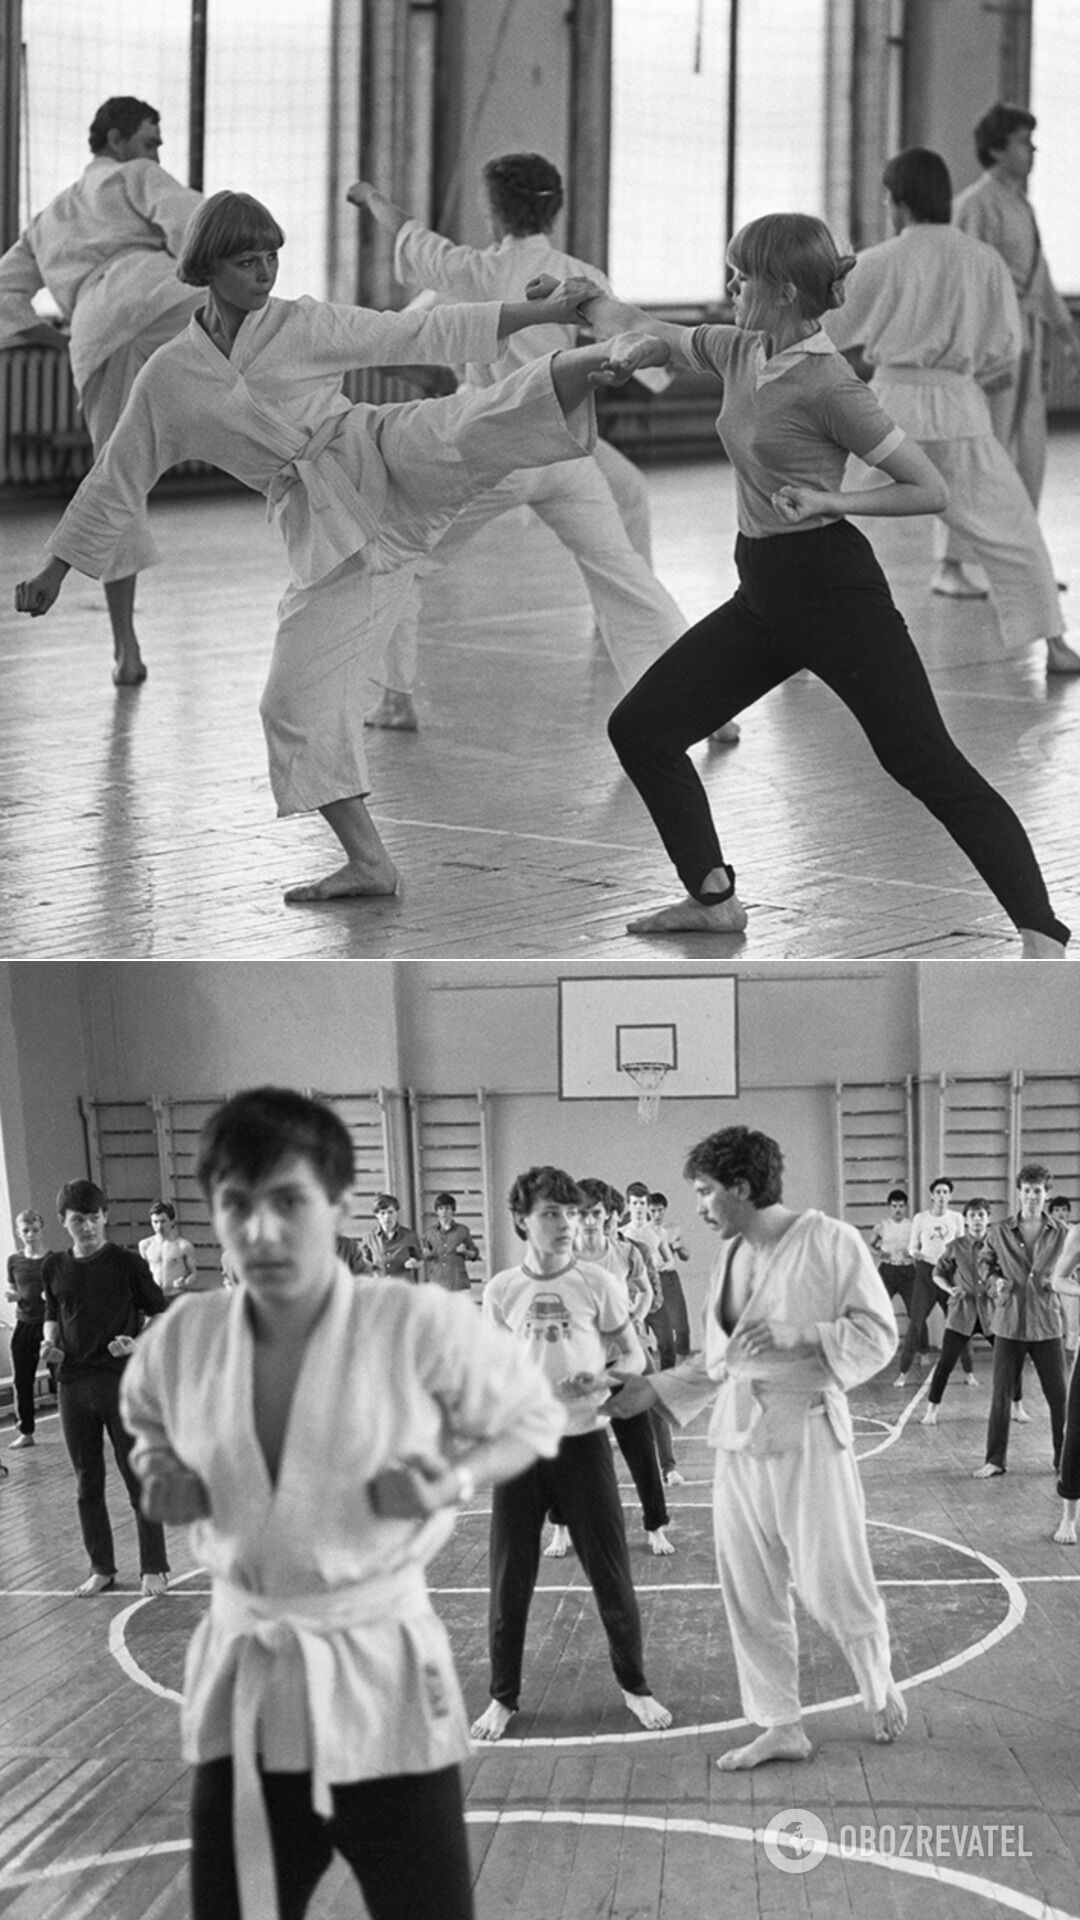 Легализировали занятия карате в СССР только в 1989 году